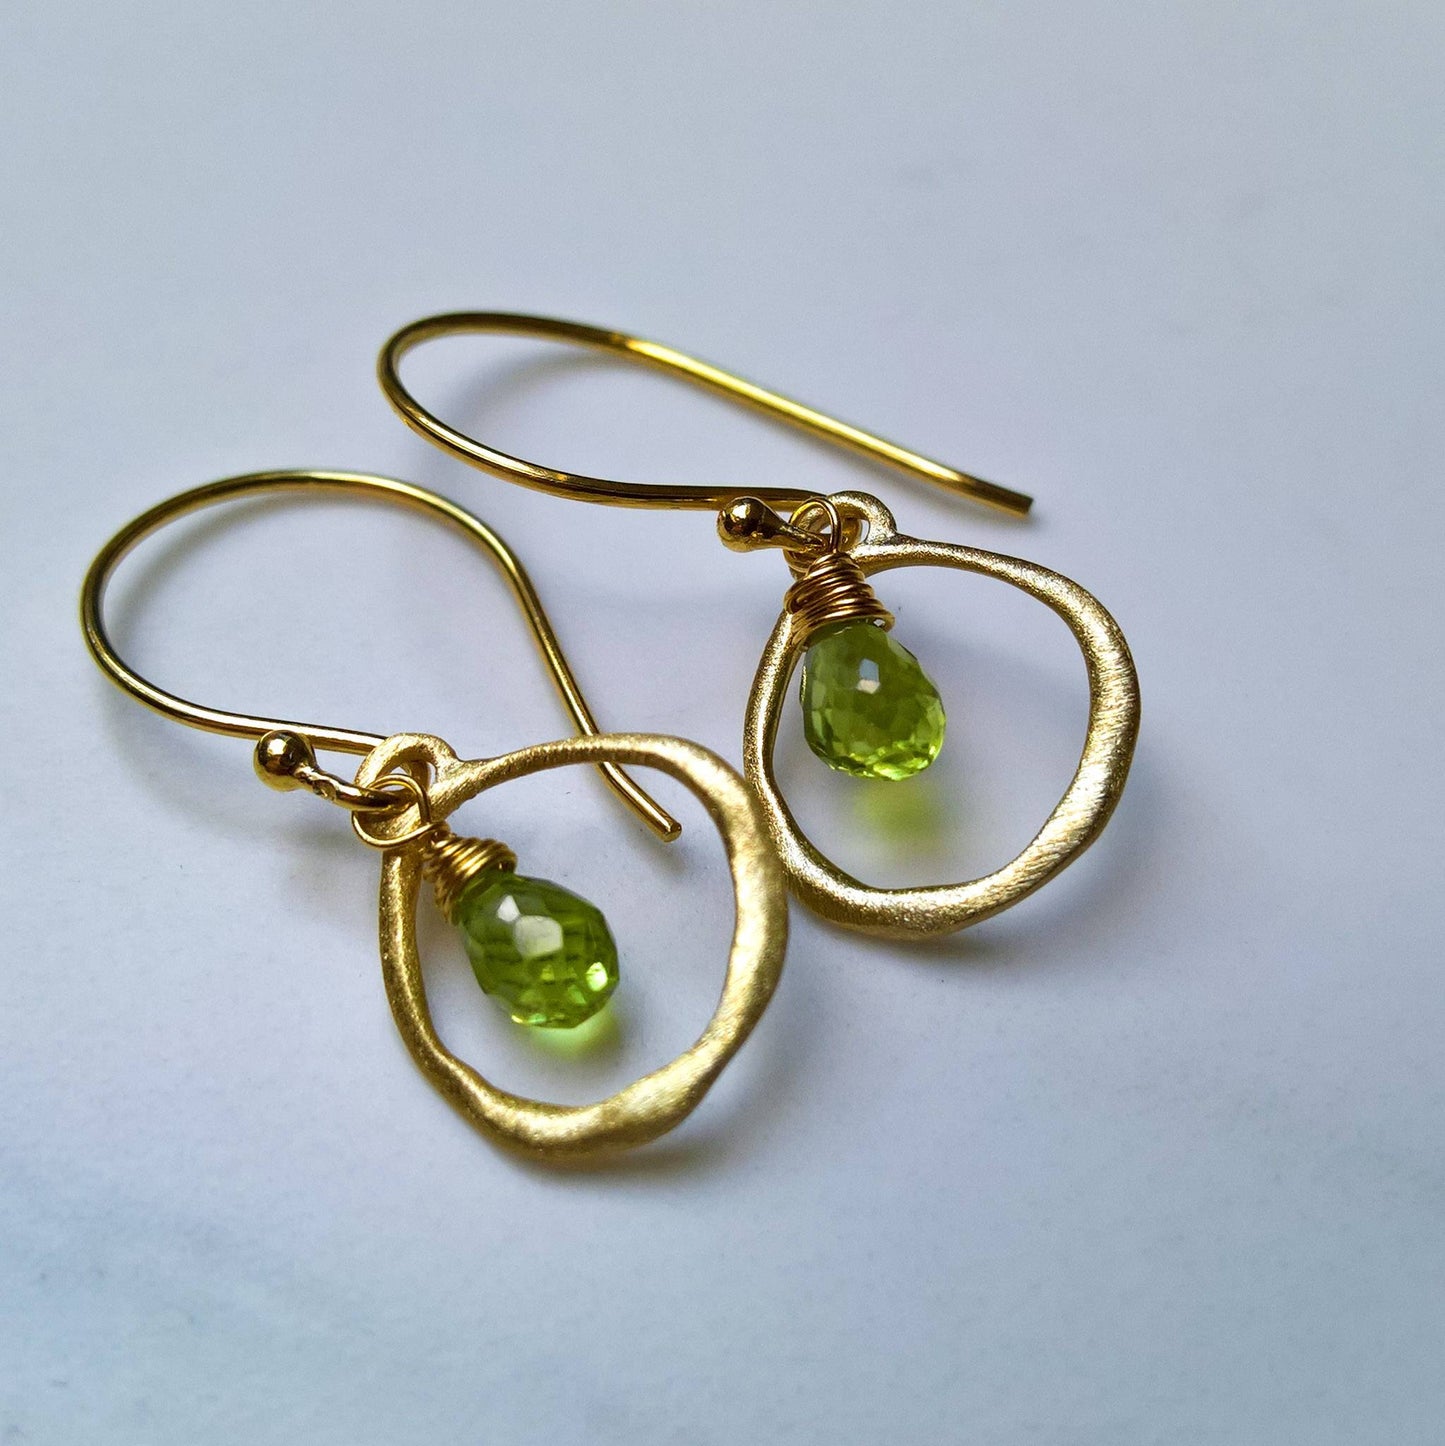 Peridot dangle earrings in gold vermeil